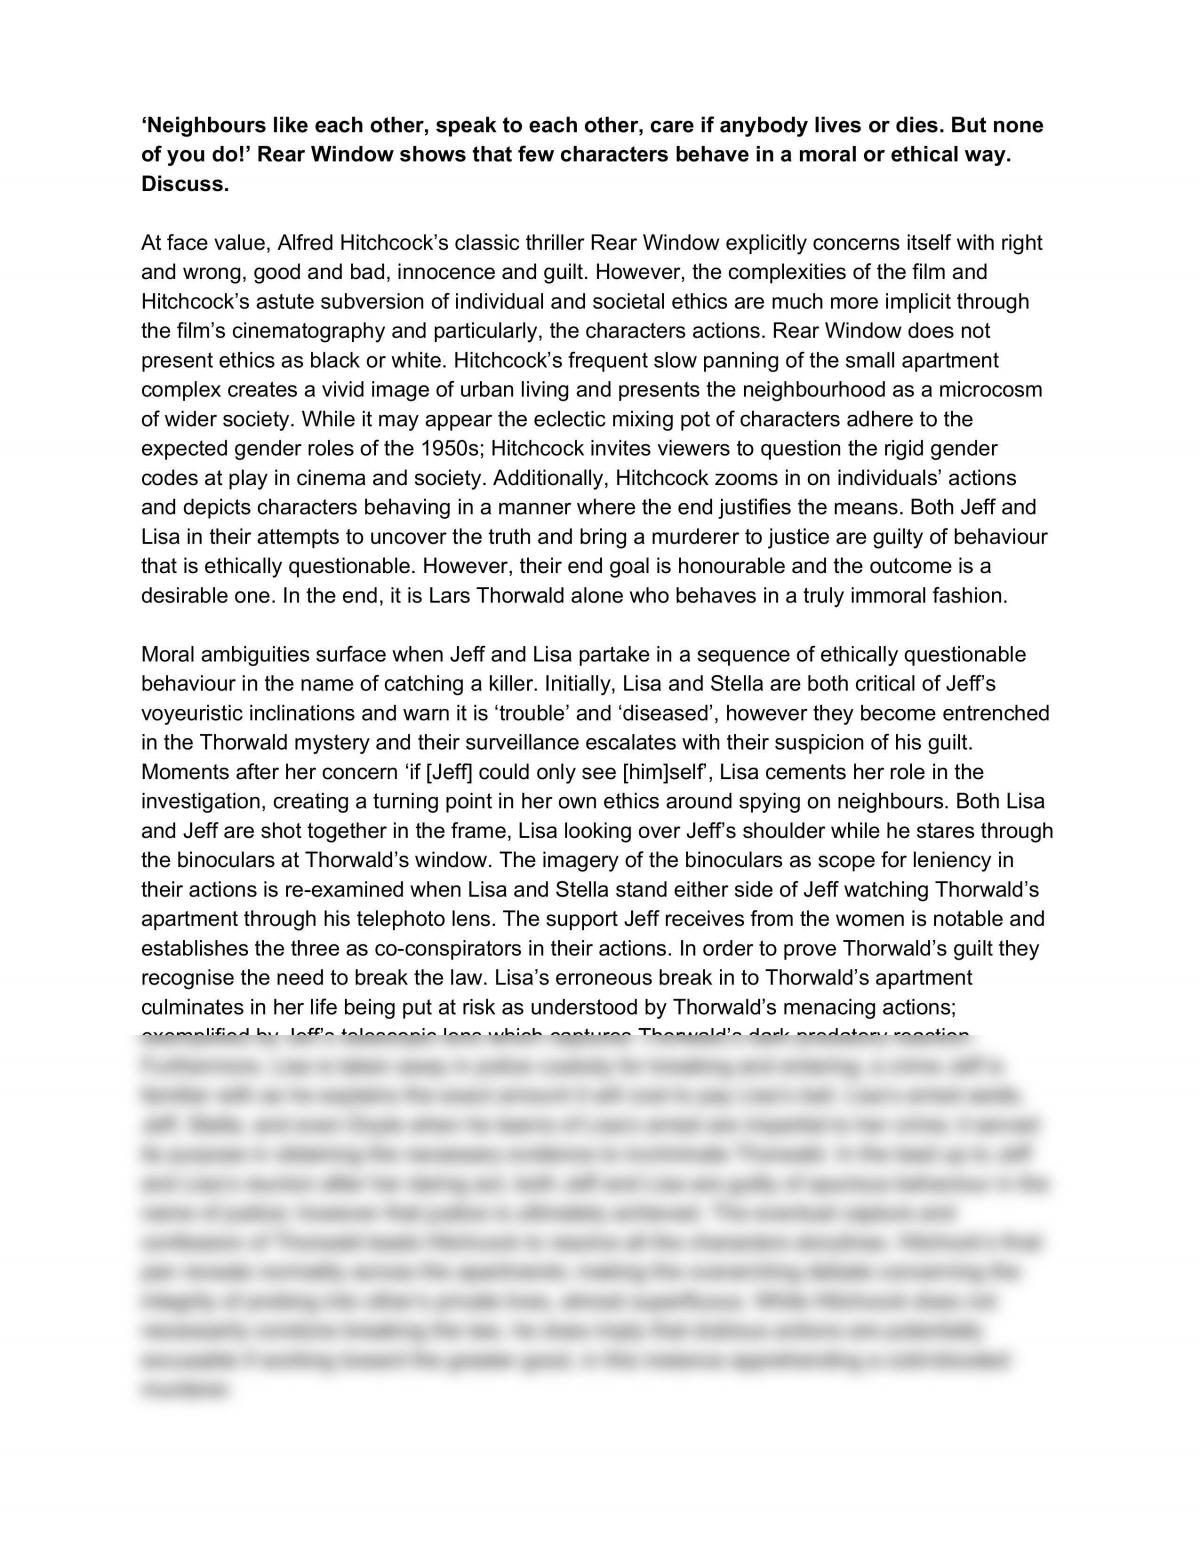 Rear Window Essay - Page 1